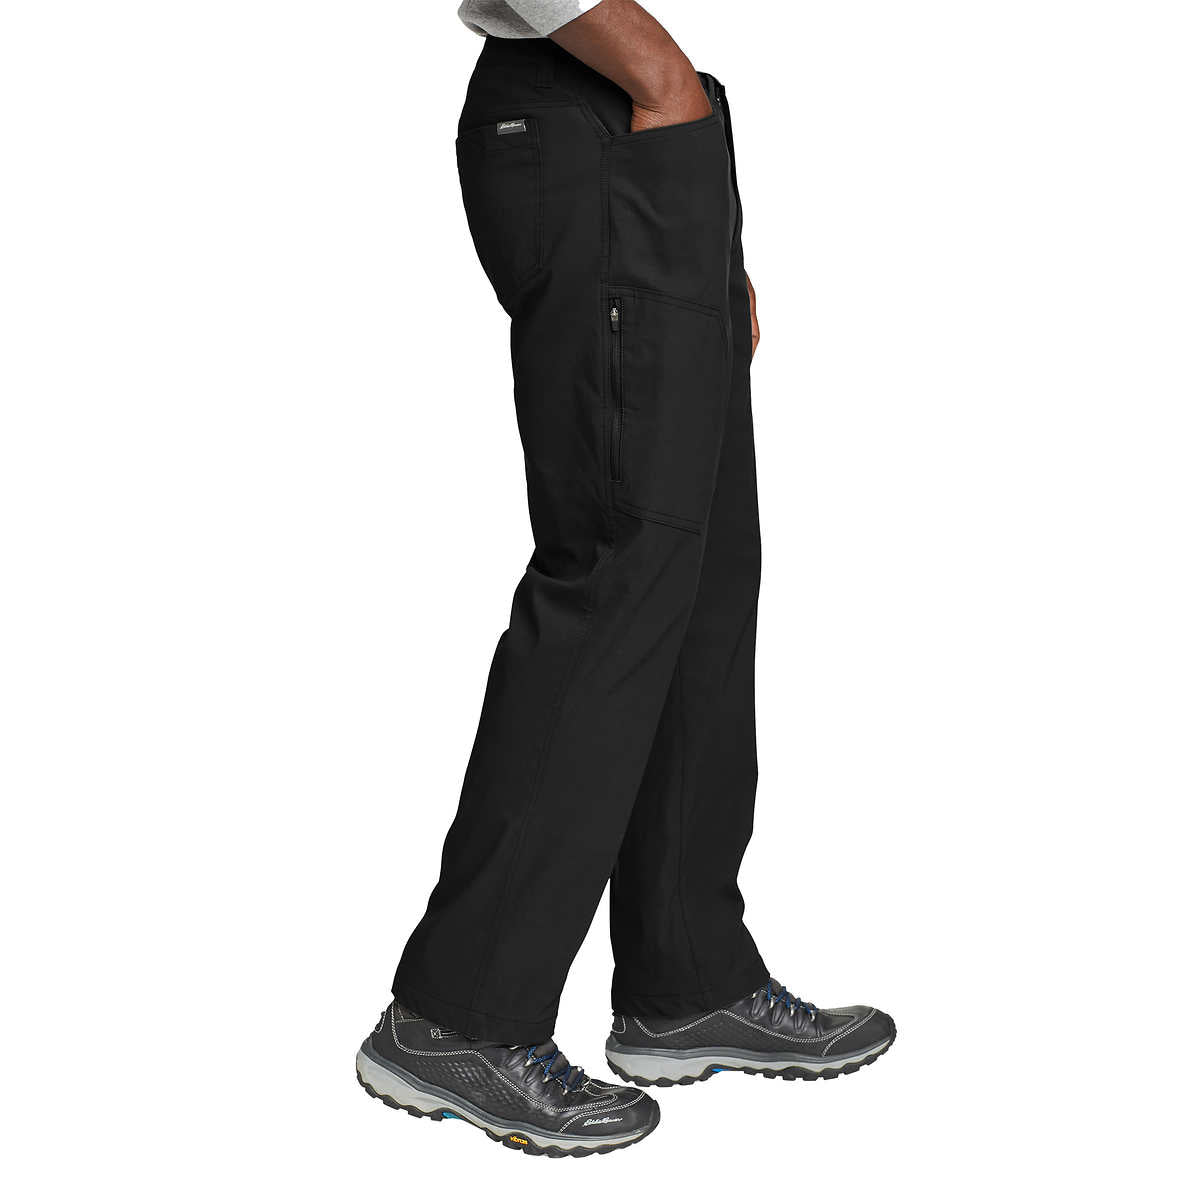 Eddie Bauer Men's Fleece Lined Pant (Black, 40W x 32L) 